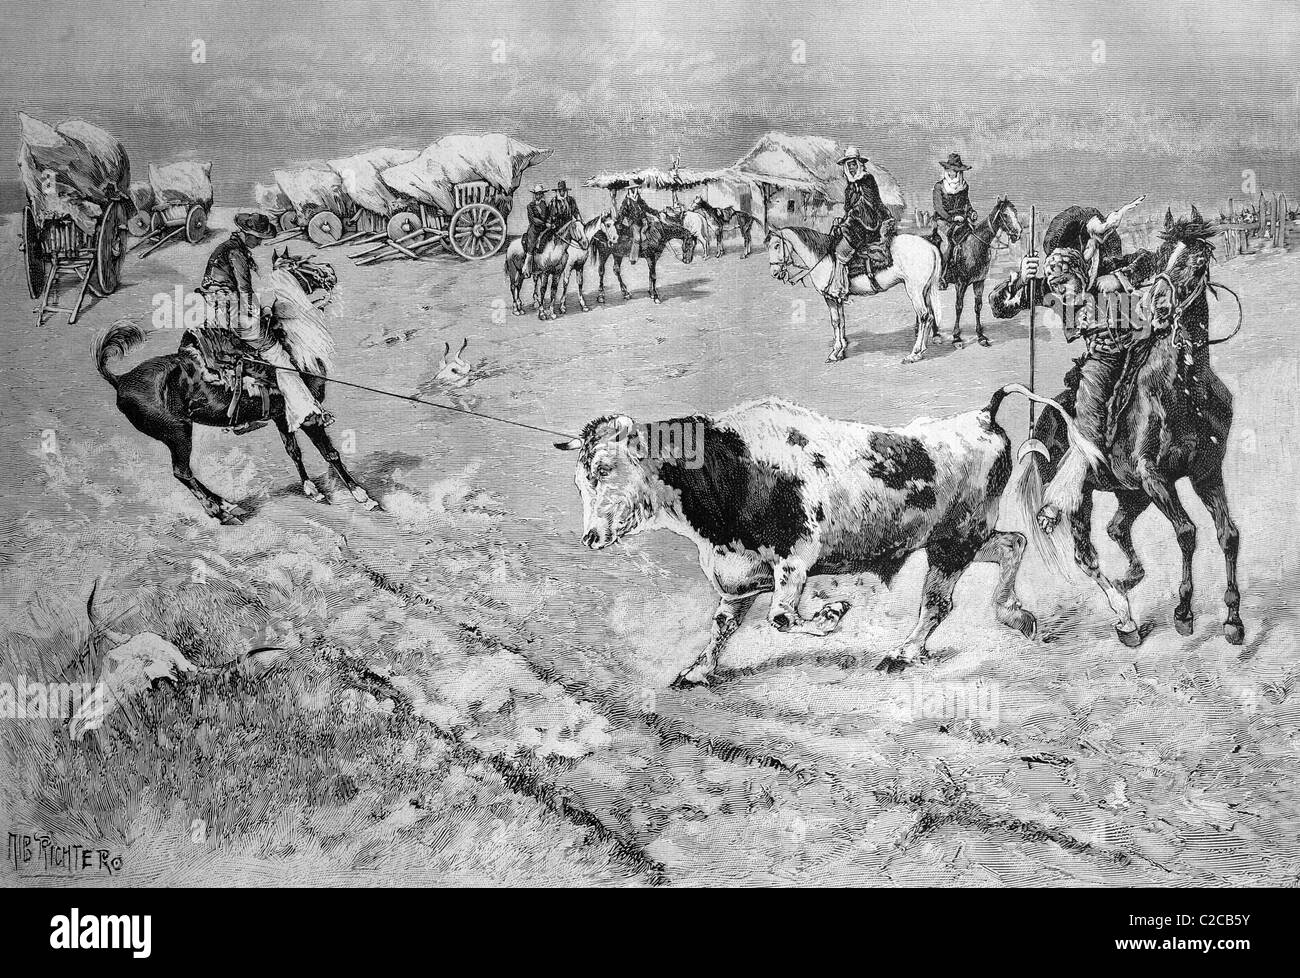 La captura de un toro en las Pampas, ilustración histórica, ca. 1893 Foto de stock